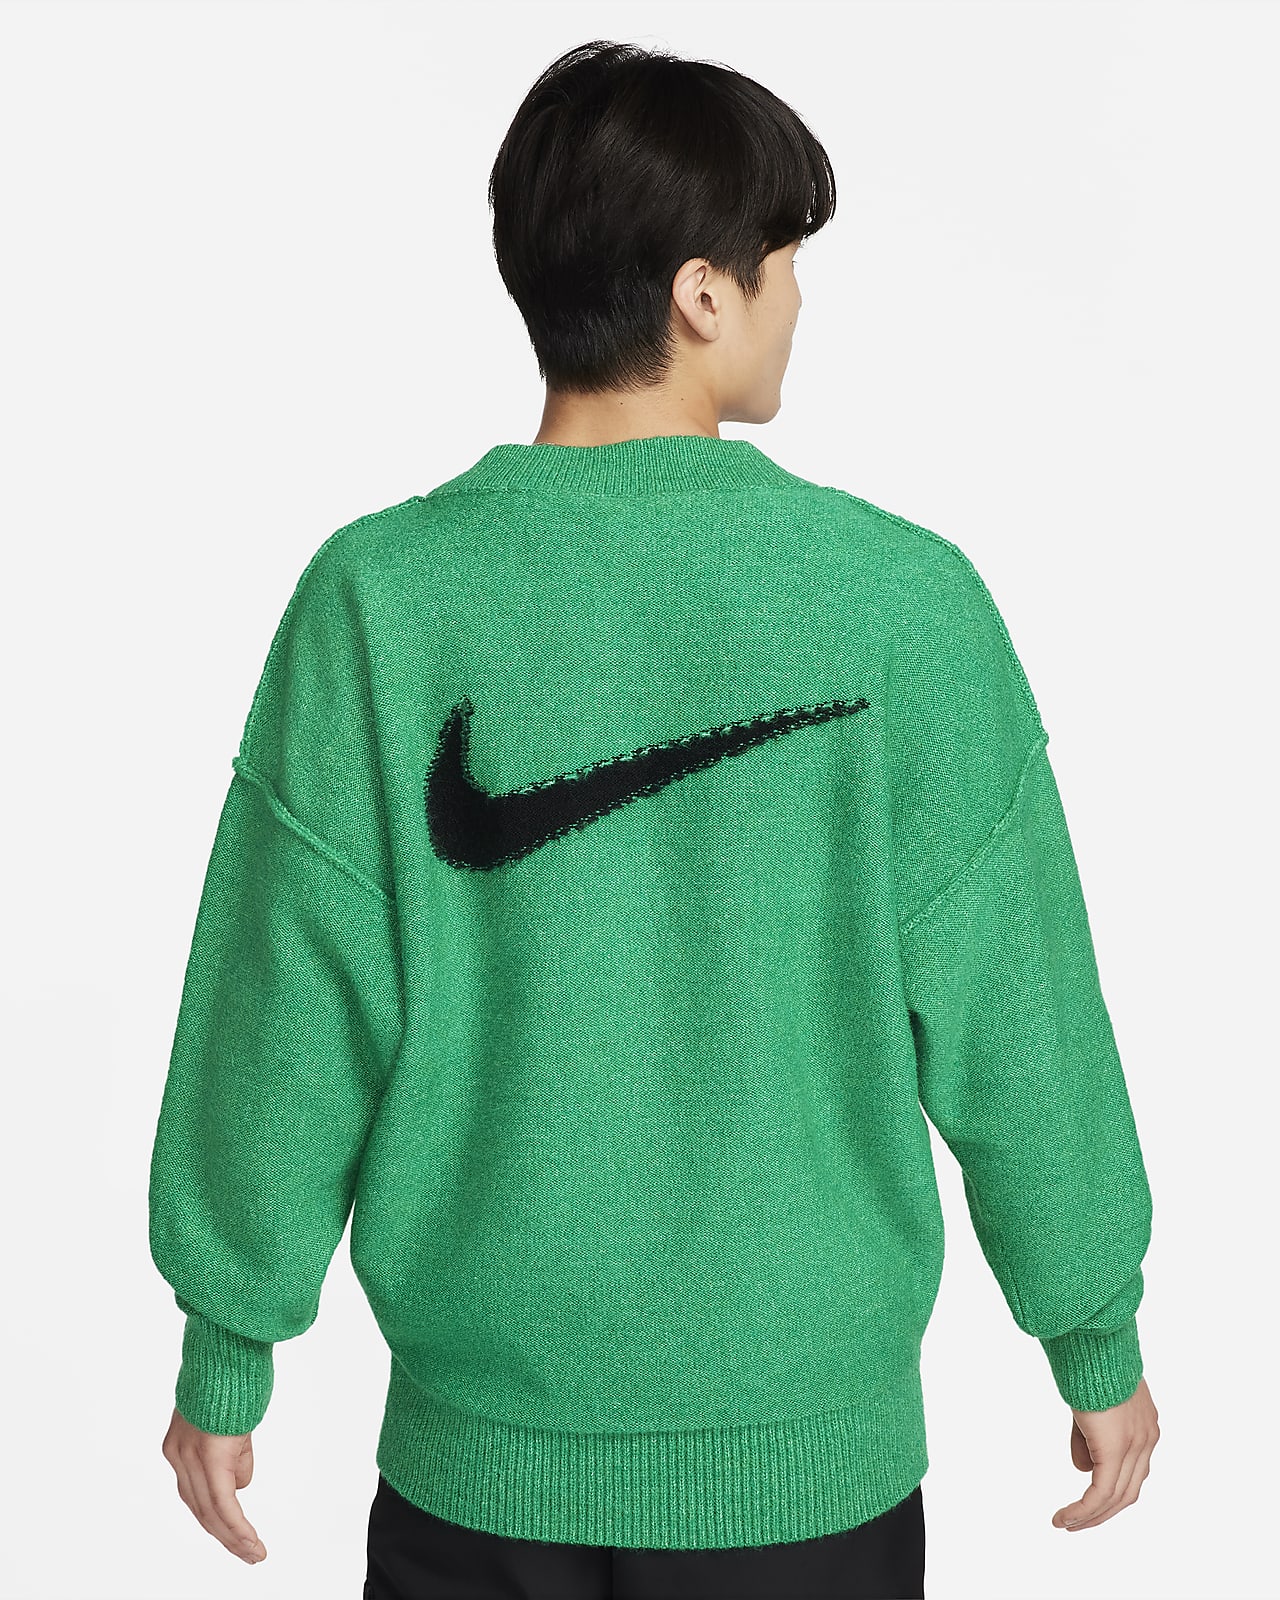 【新作早割】ナイキ スポーツウェア セーター ウェア